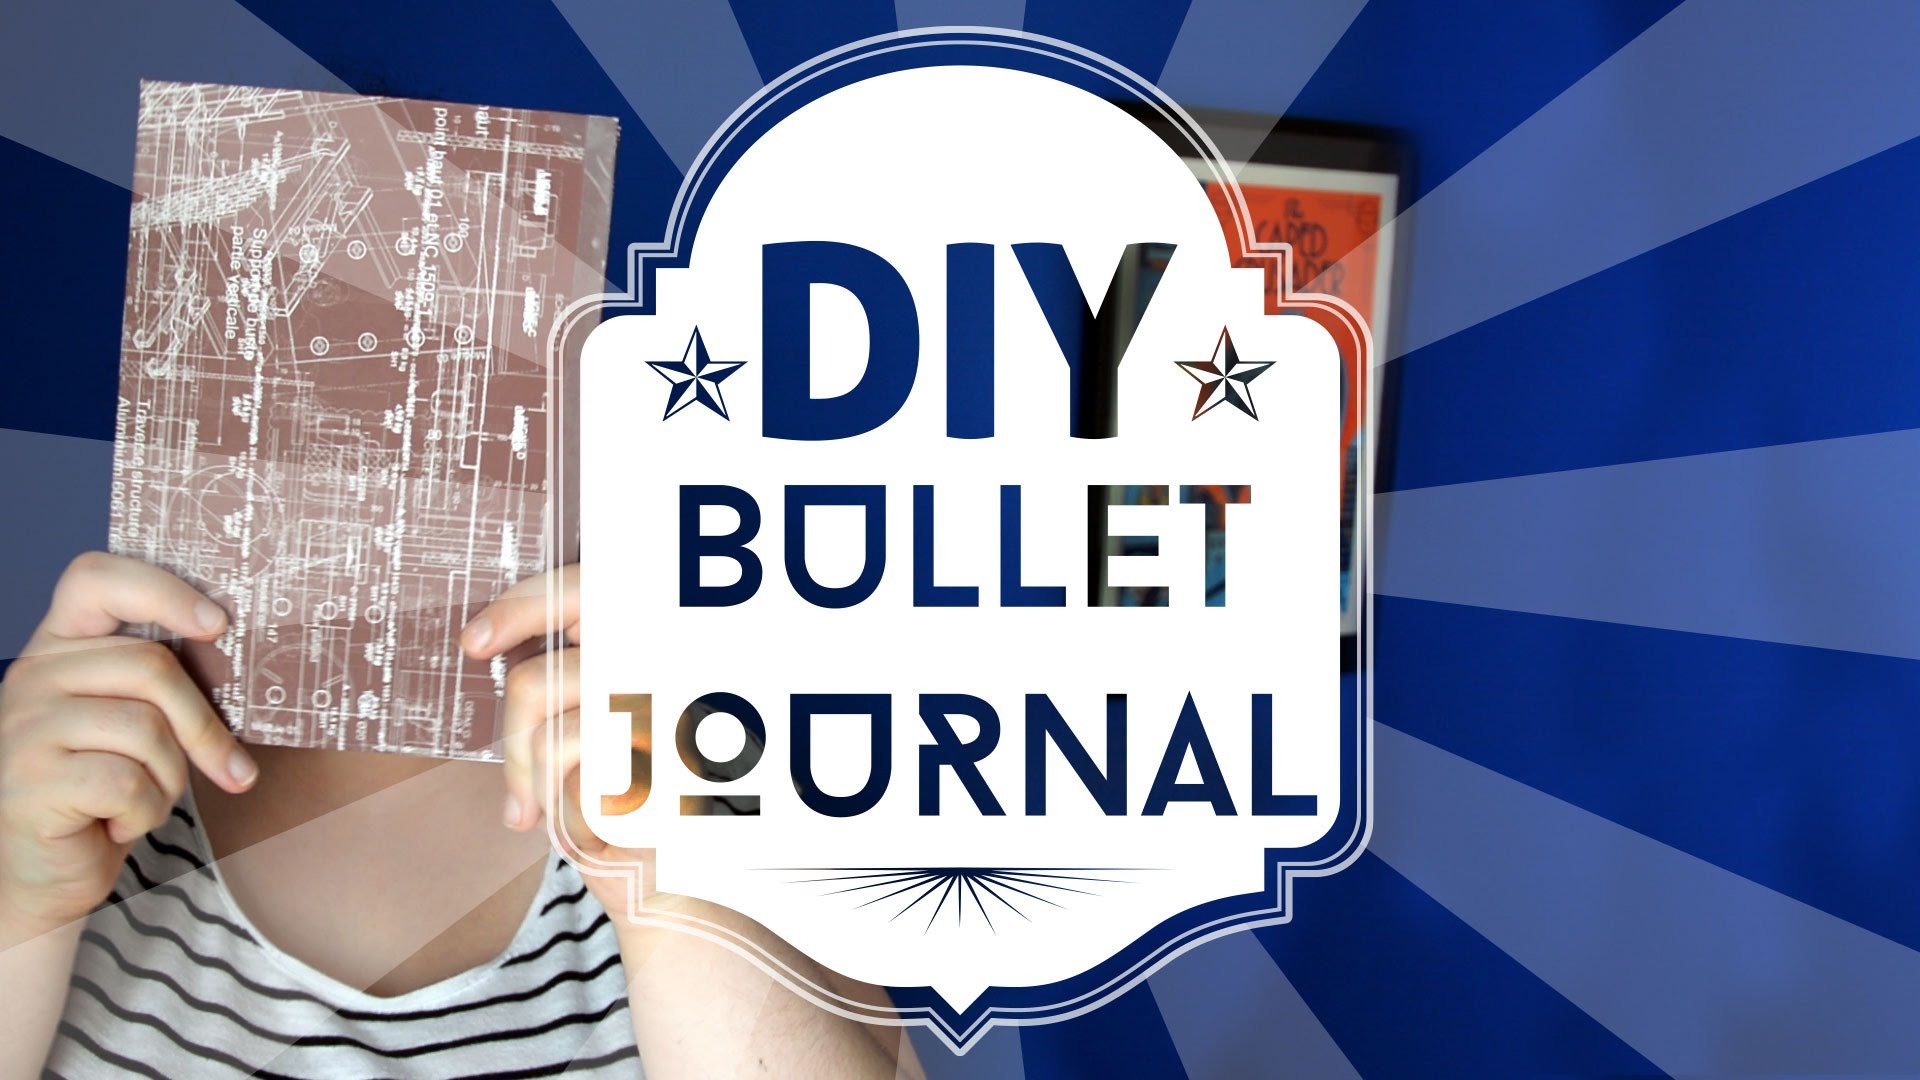 Tuto papeterie DIY : Fabriquer son Bullet Journal facilement